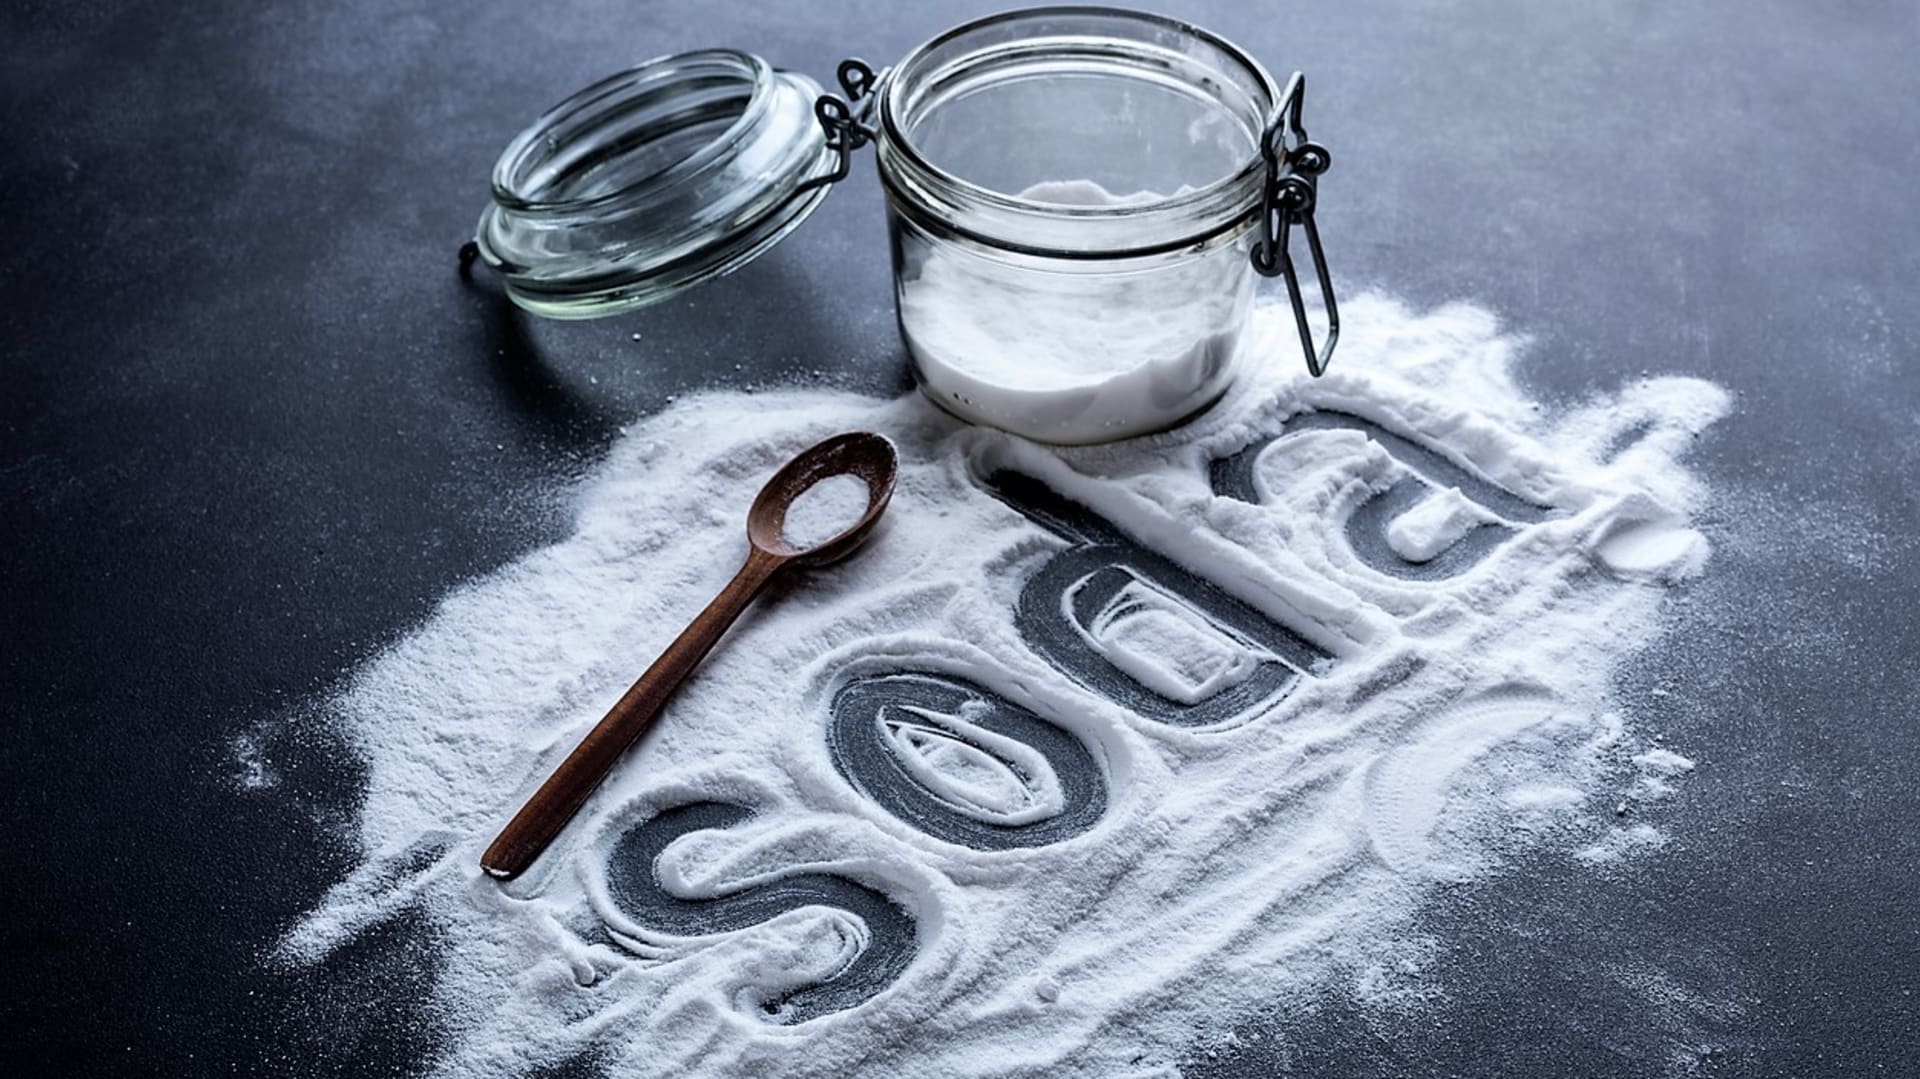 V kuchyni se jedlá soda dá využít místo kypřicího prášku do pečiva, rozpuštěná ve vodě může ulevit od pálení žáhy a zároveň je univerzálním pomocníkem při úklidu.